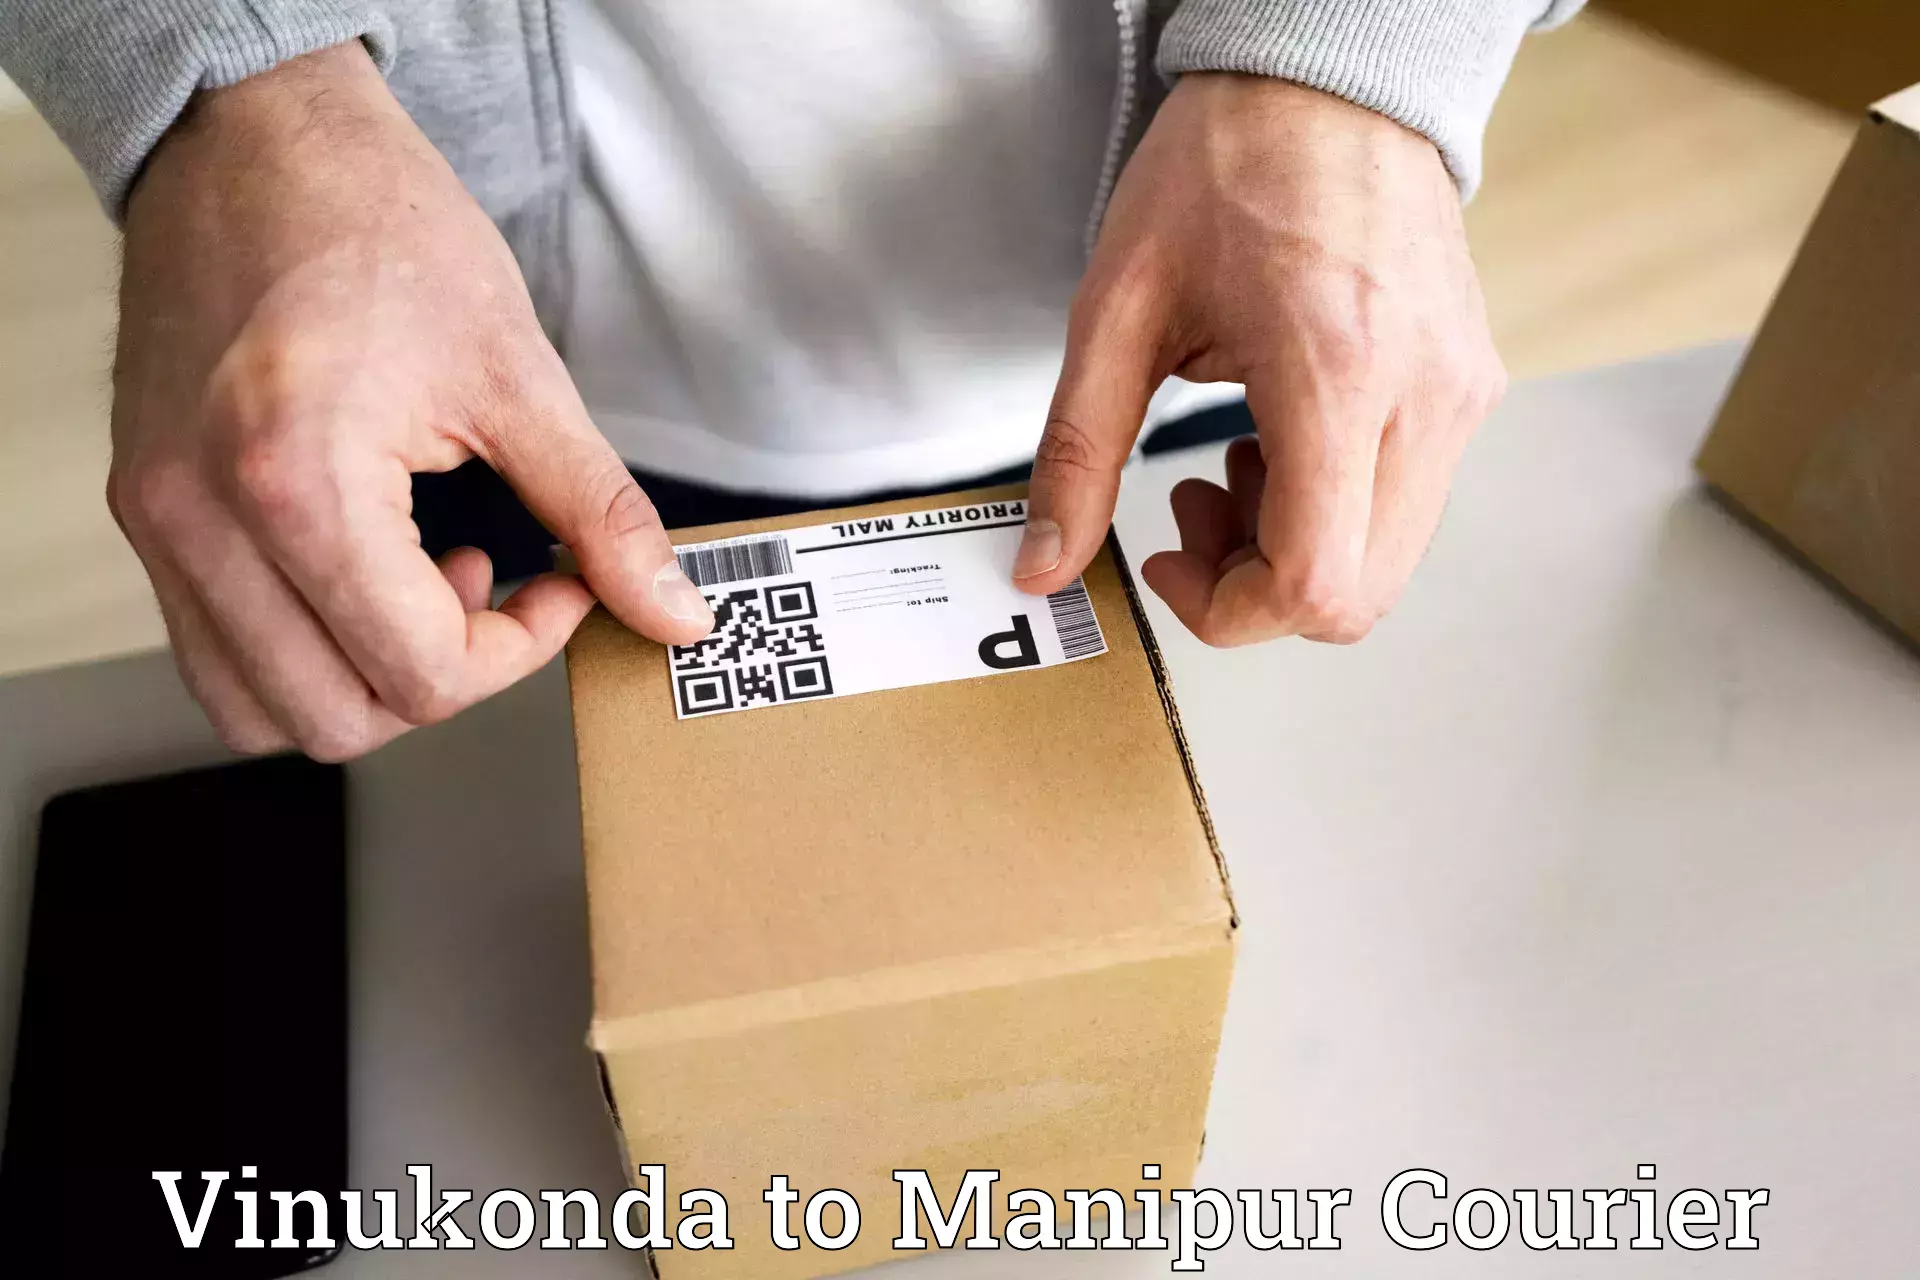 Secure packaging in Vinukonda to Manipur